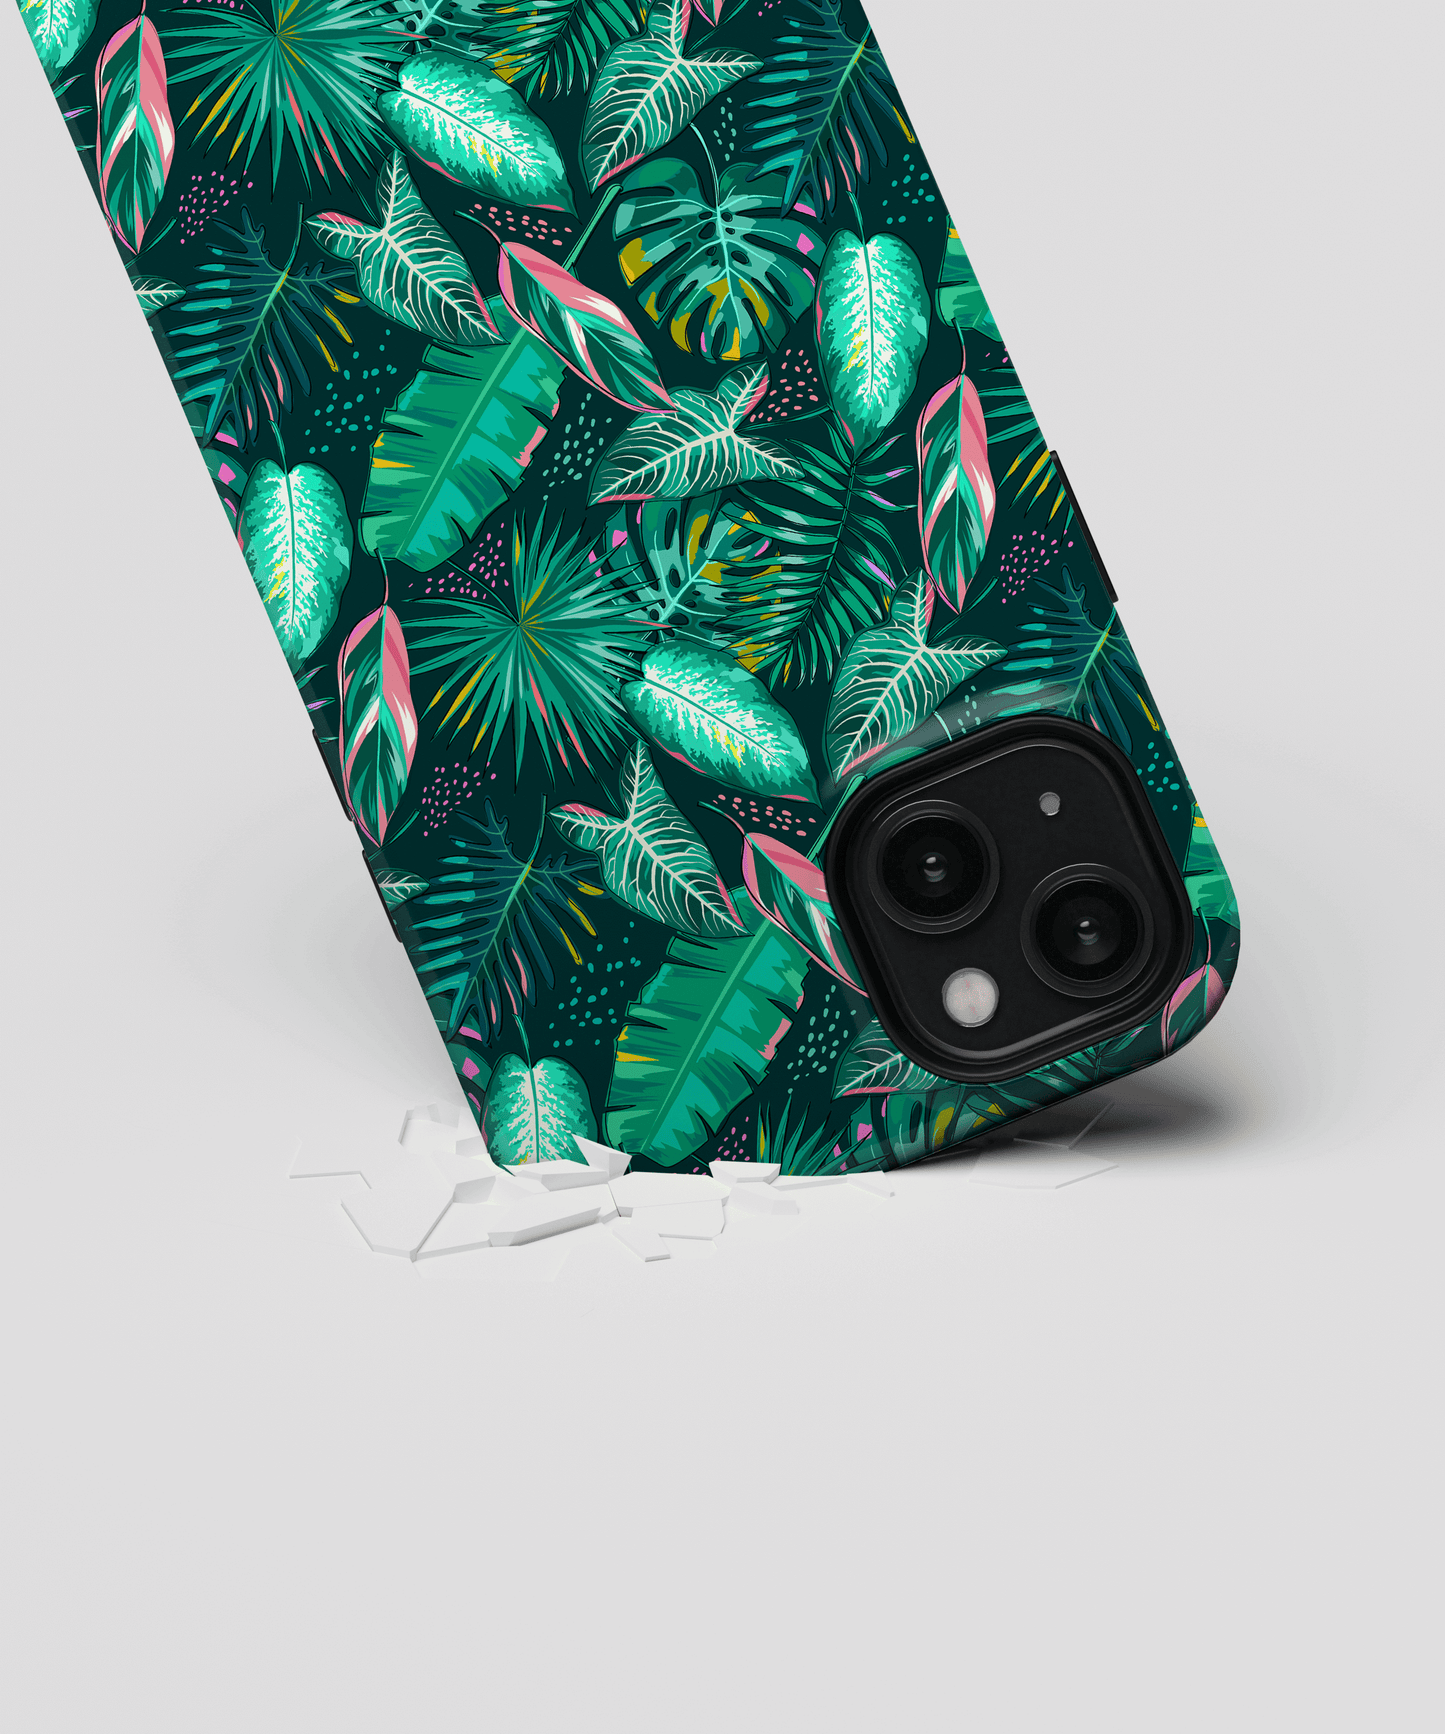 Palms - iPhone 7plus / 8plus phone case